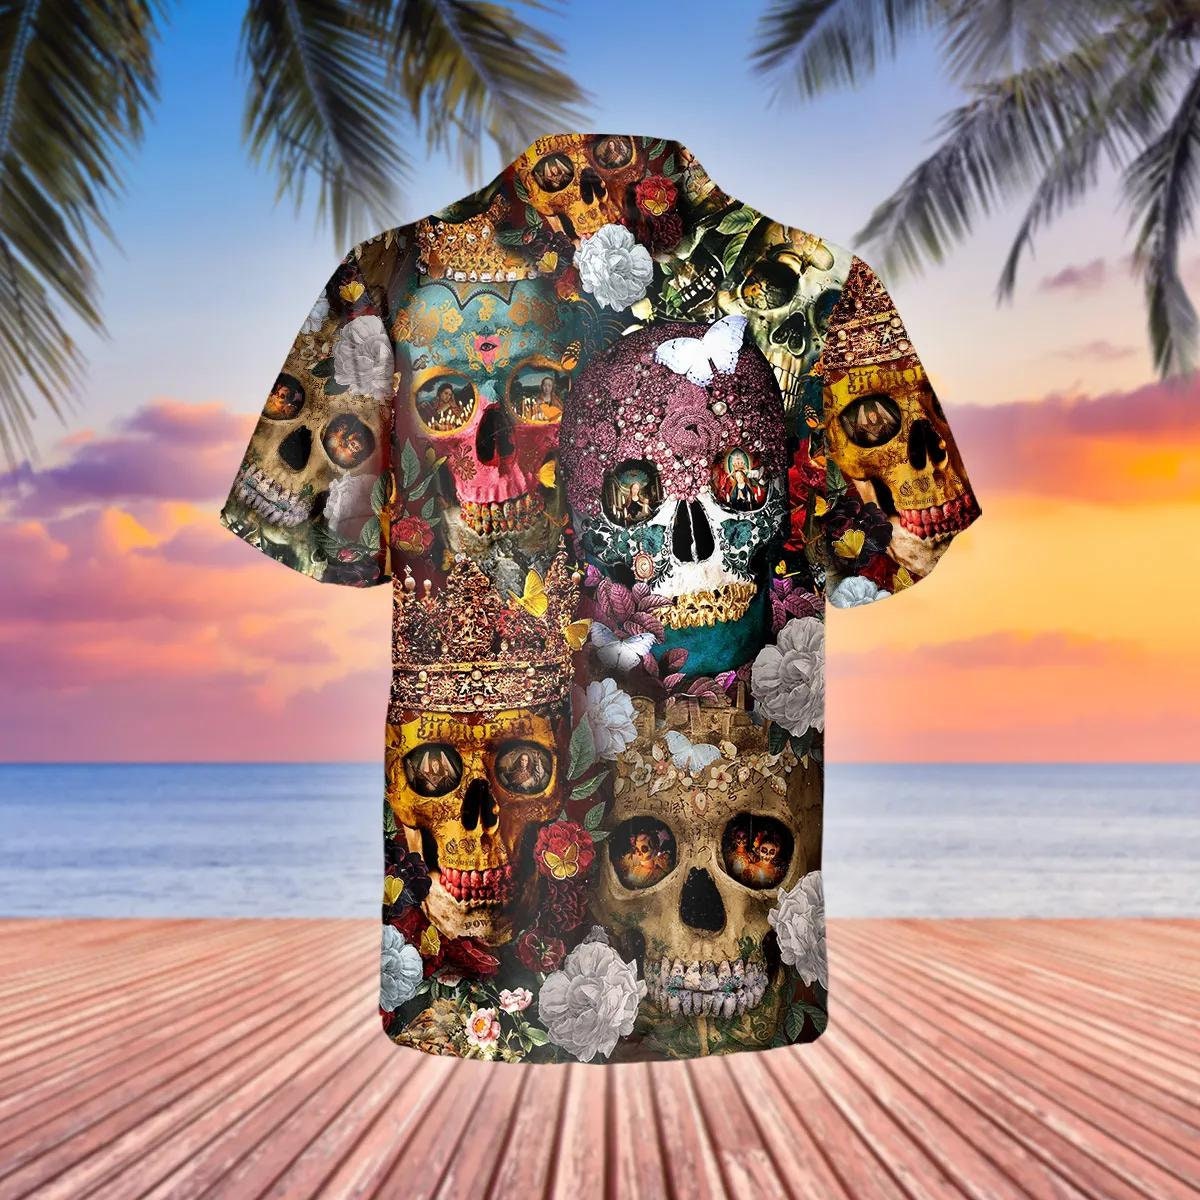 Discover Viking Hawaiian Unisex Shirt, Camisa Hawaiana Viking para Hombre Mujer